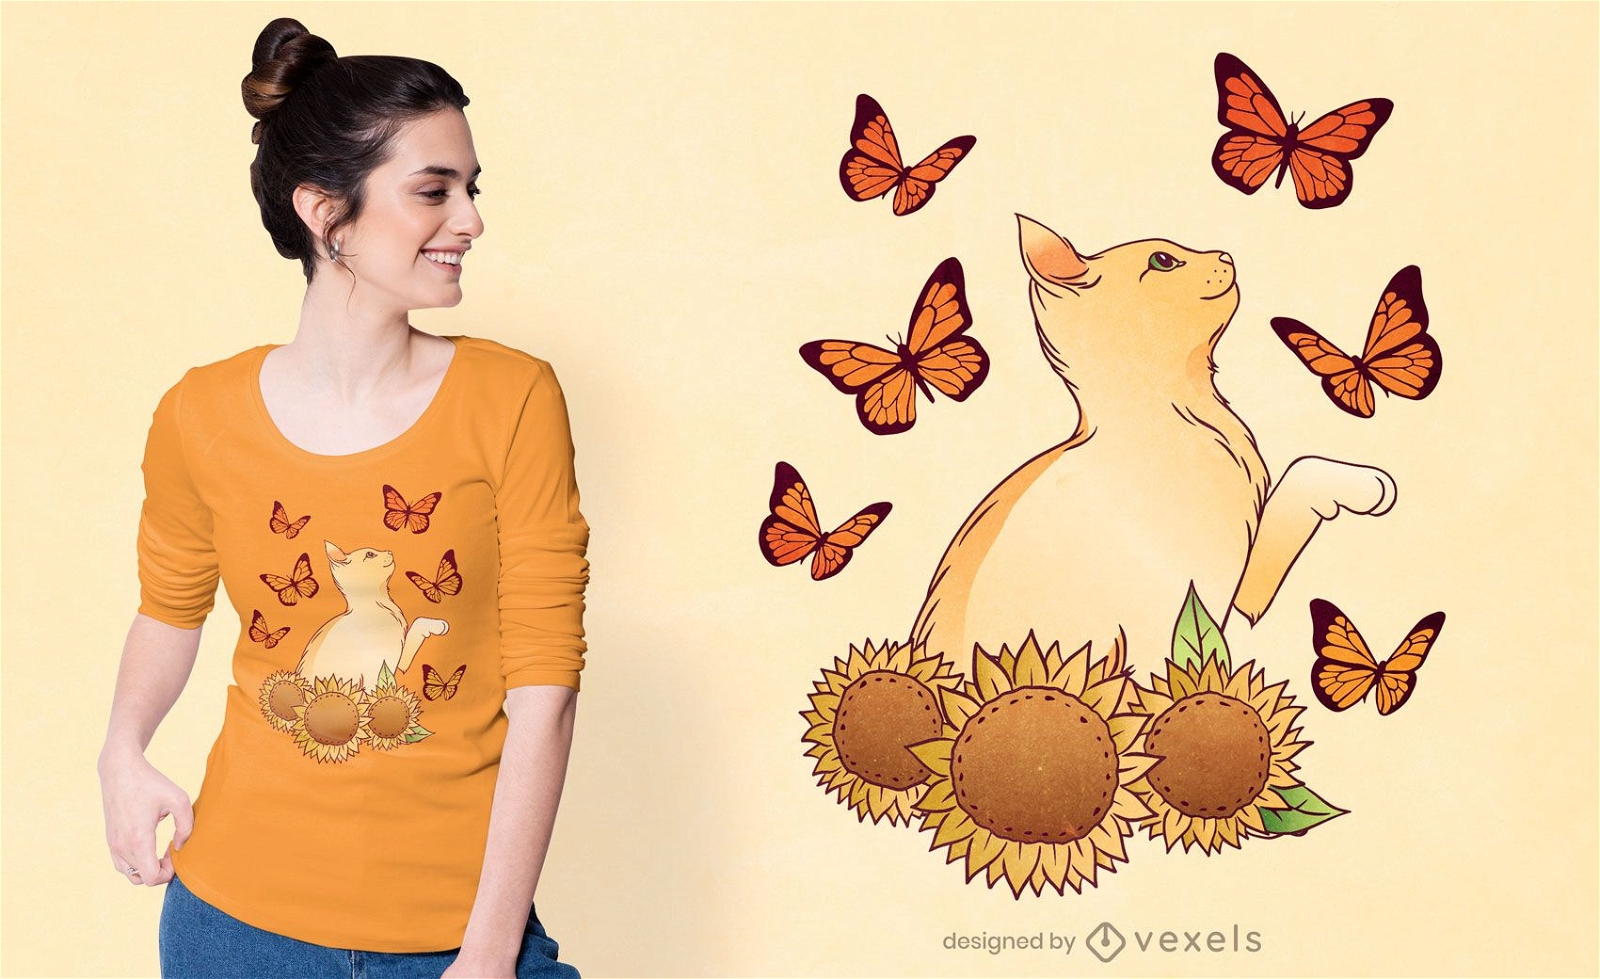 Sunflowers cat t-shirt design